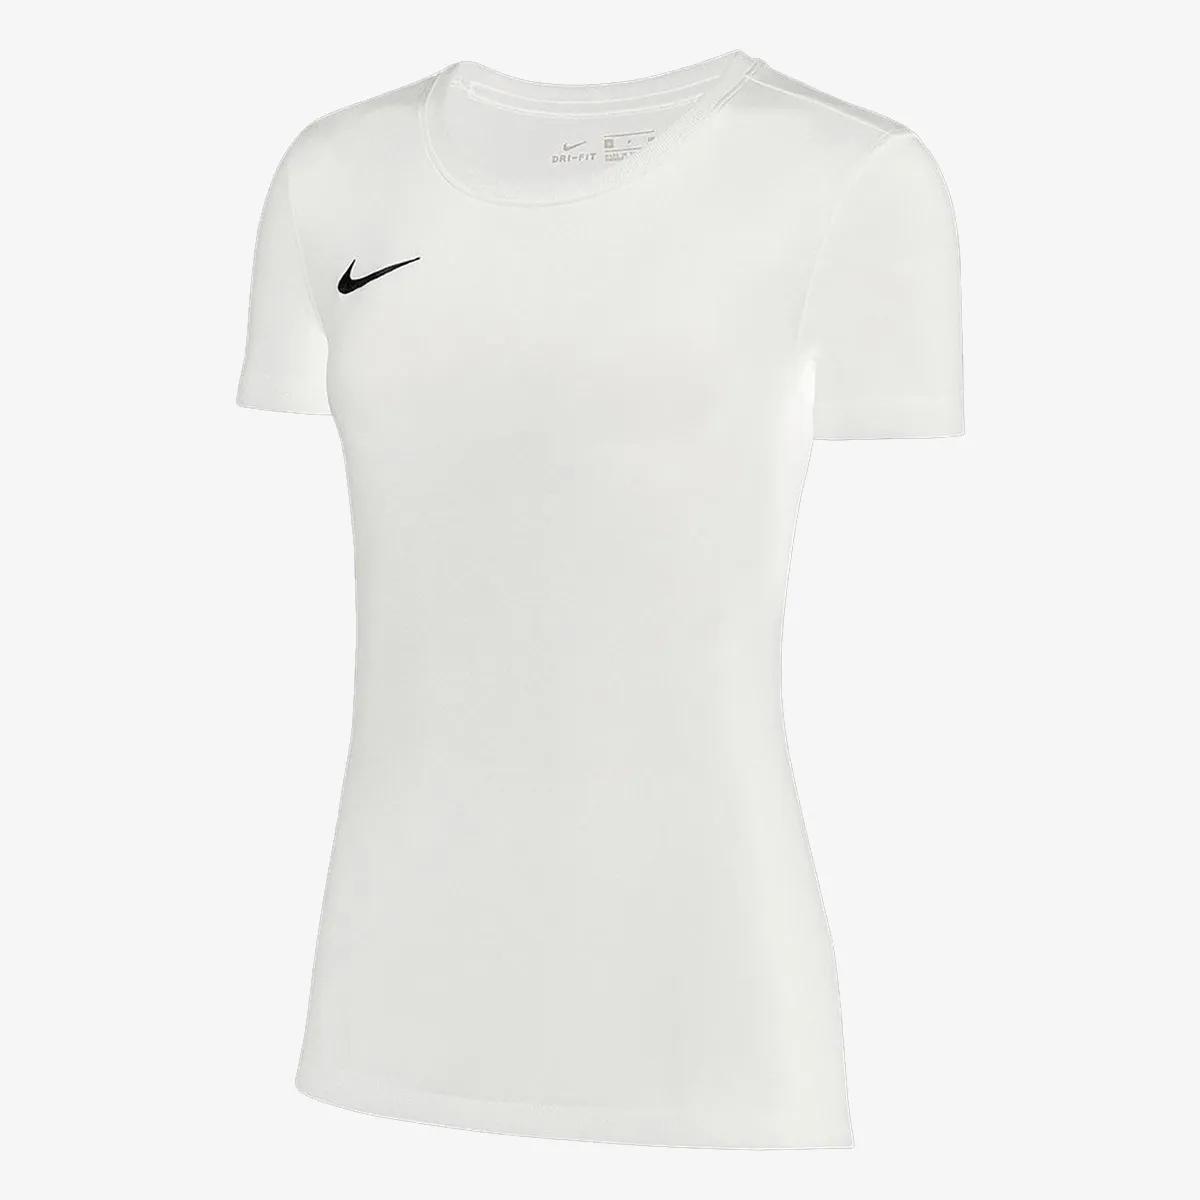 Nike Tricou Sportswear Swoosh 